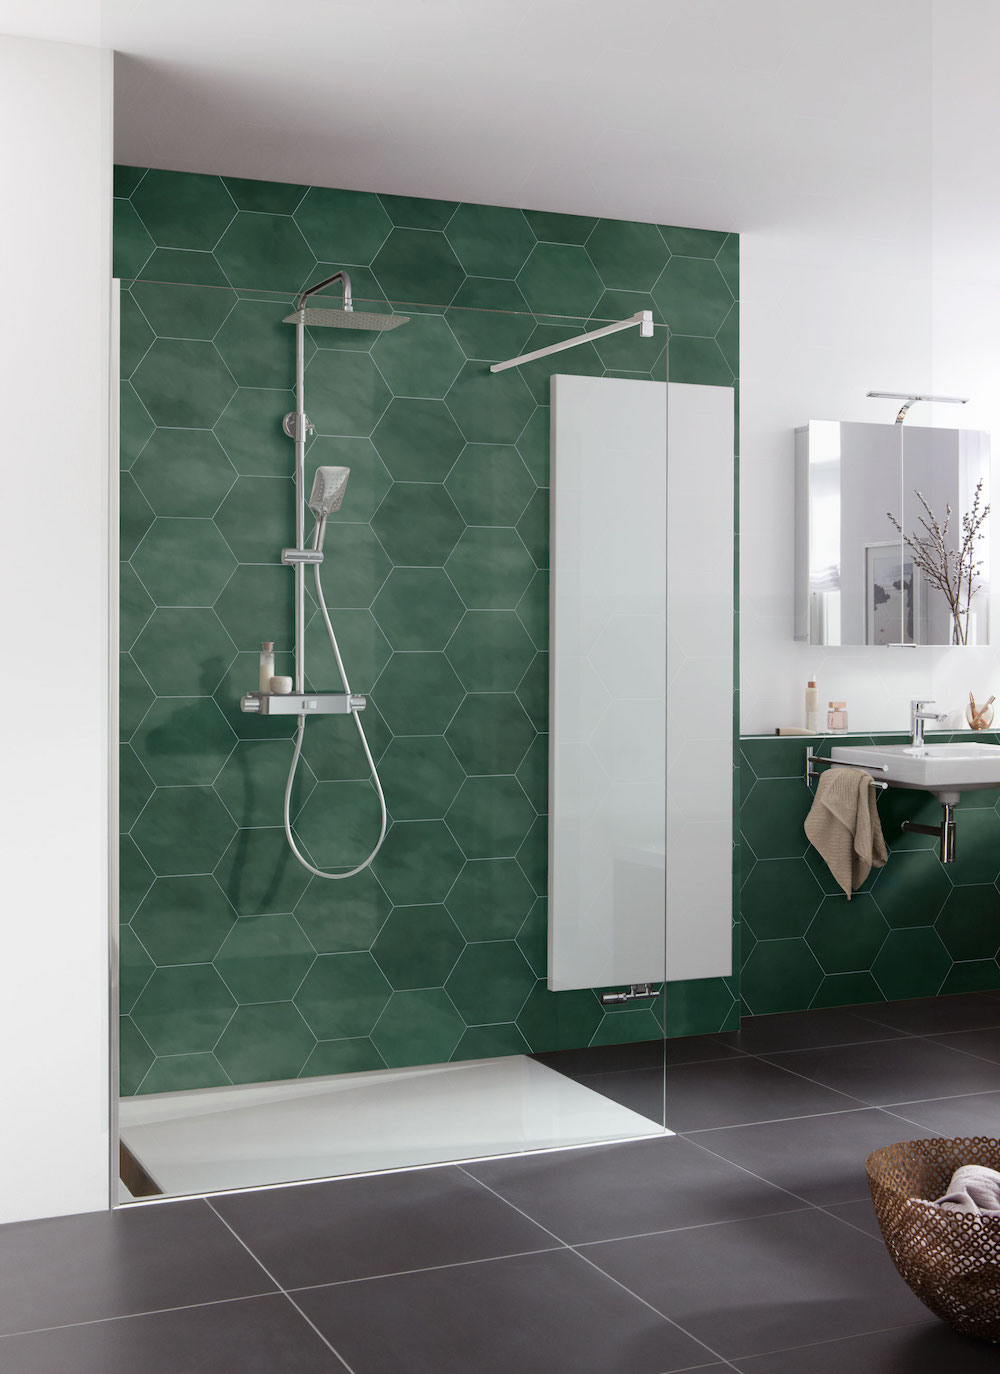 Duurzame en groene badkamer. mijn bad in stijl #badkamer #duurzaam #groen #badkamerinspiratie #badkameridee #inloopdouche #douche